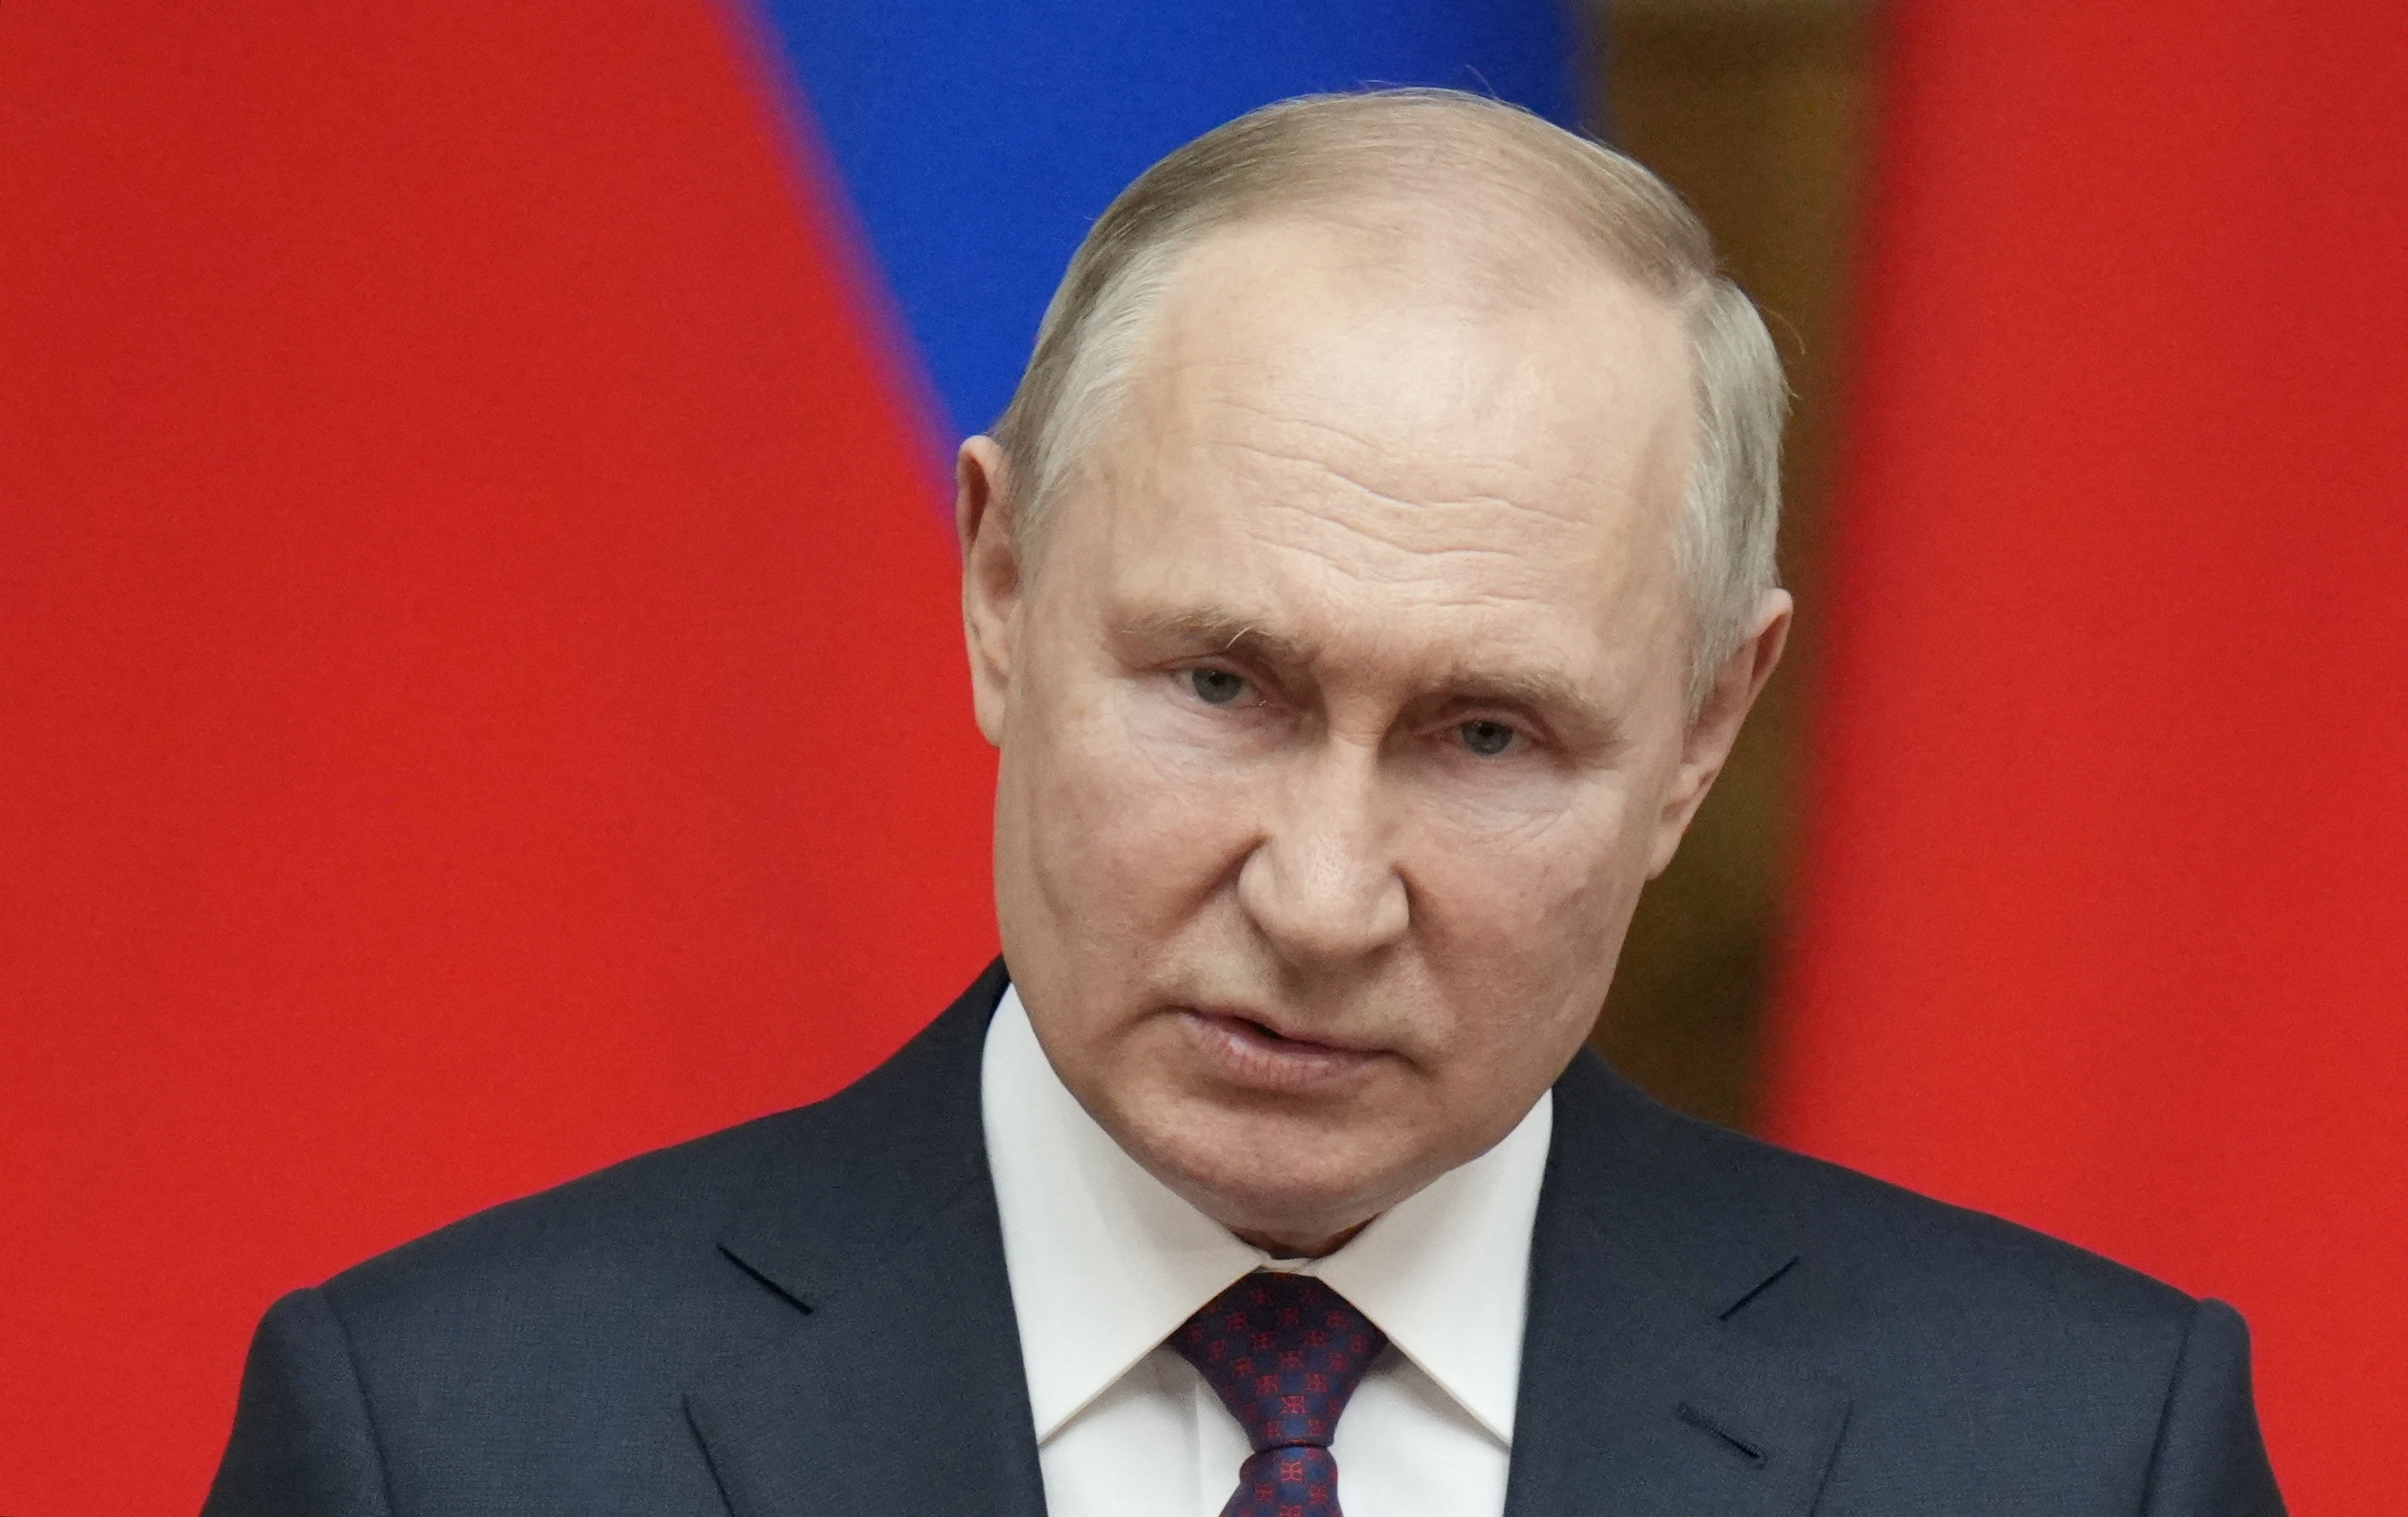 El presidente ruso Vladimir Putin (Sputnik/Alexei Danichev/Pool via REUTERS)